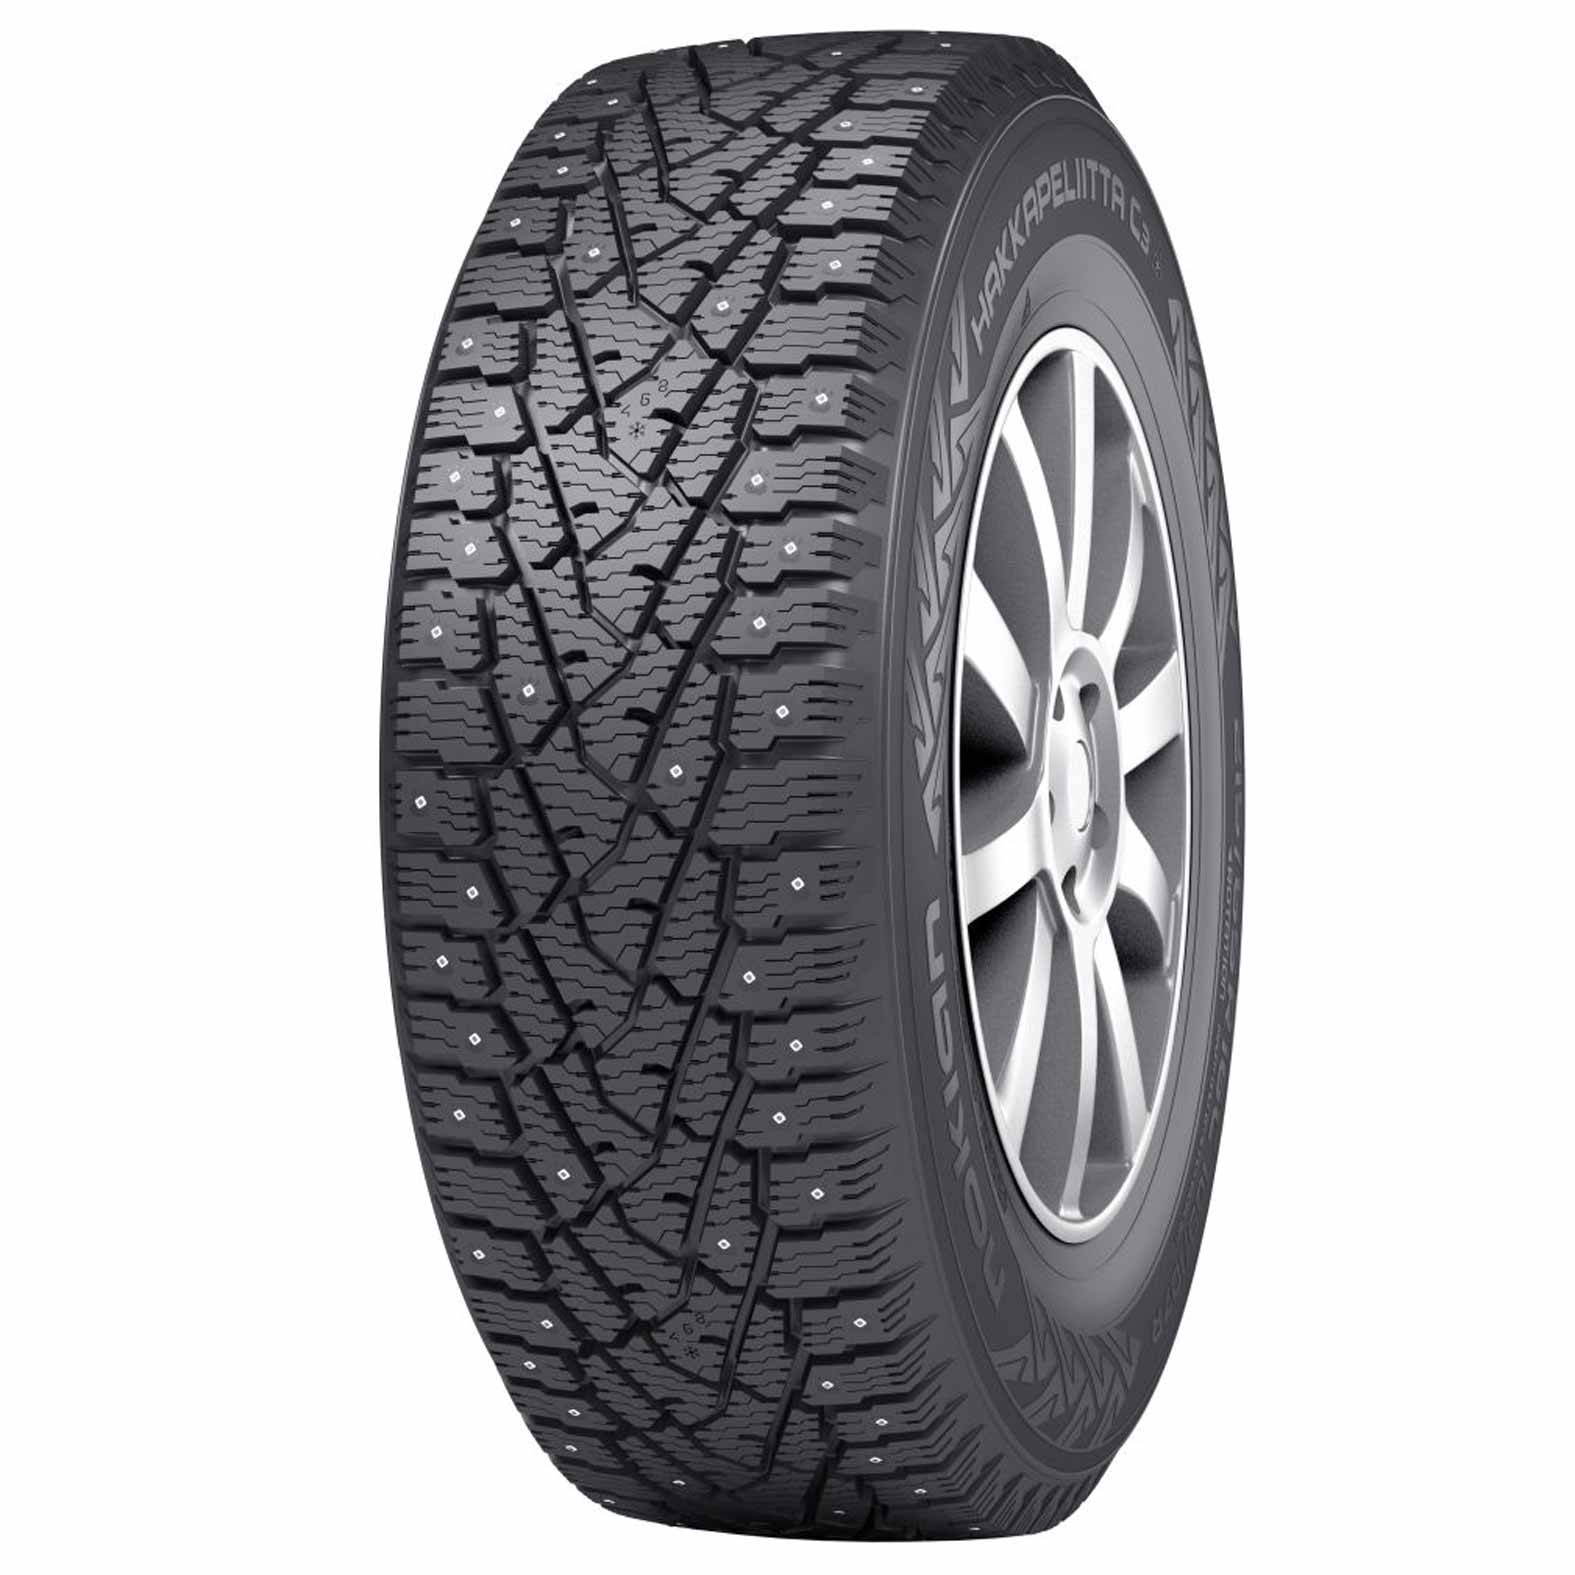 nokian-hakkapeliitta-c3-studded-tires-for-winter-kal-tire